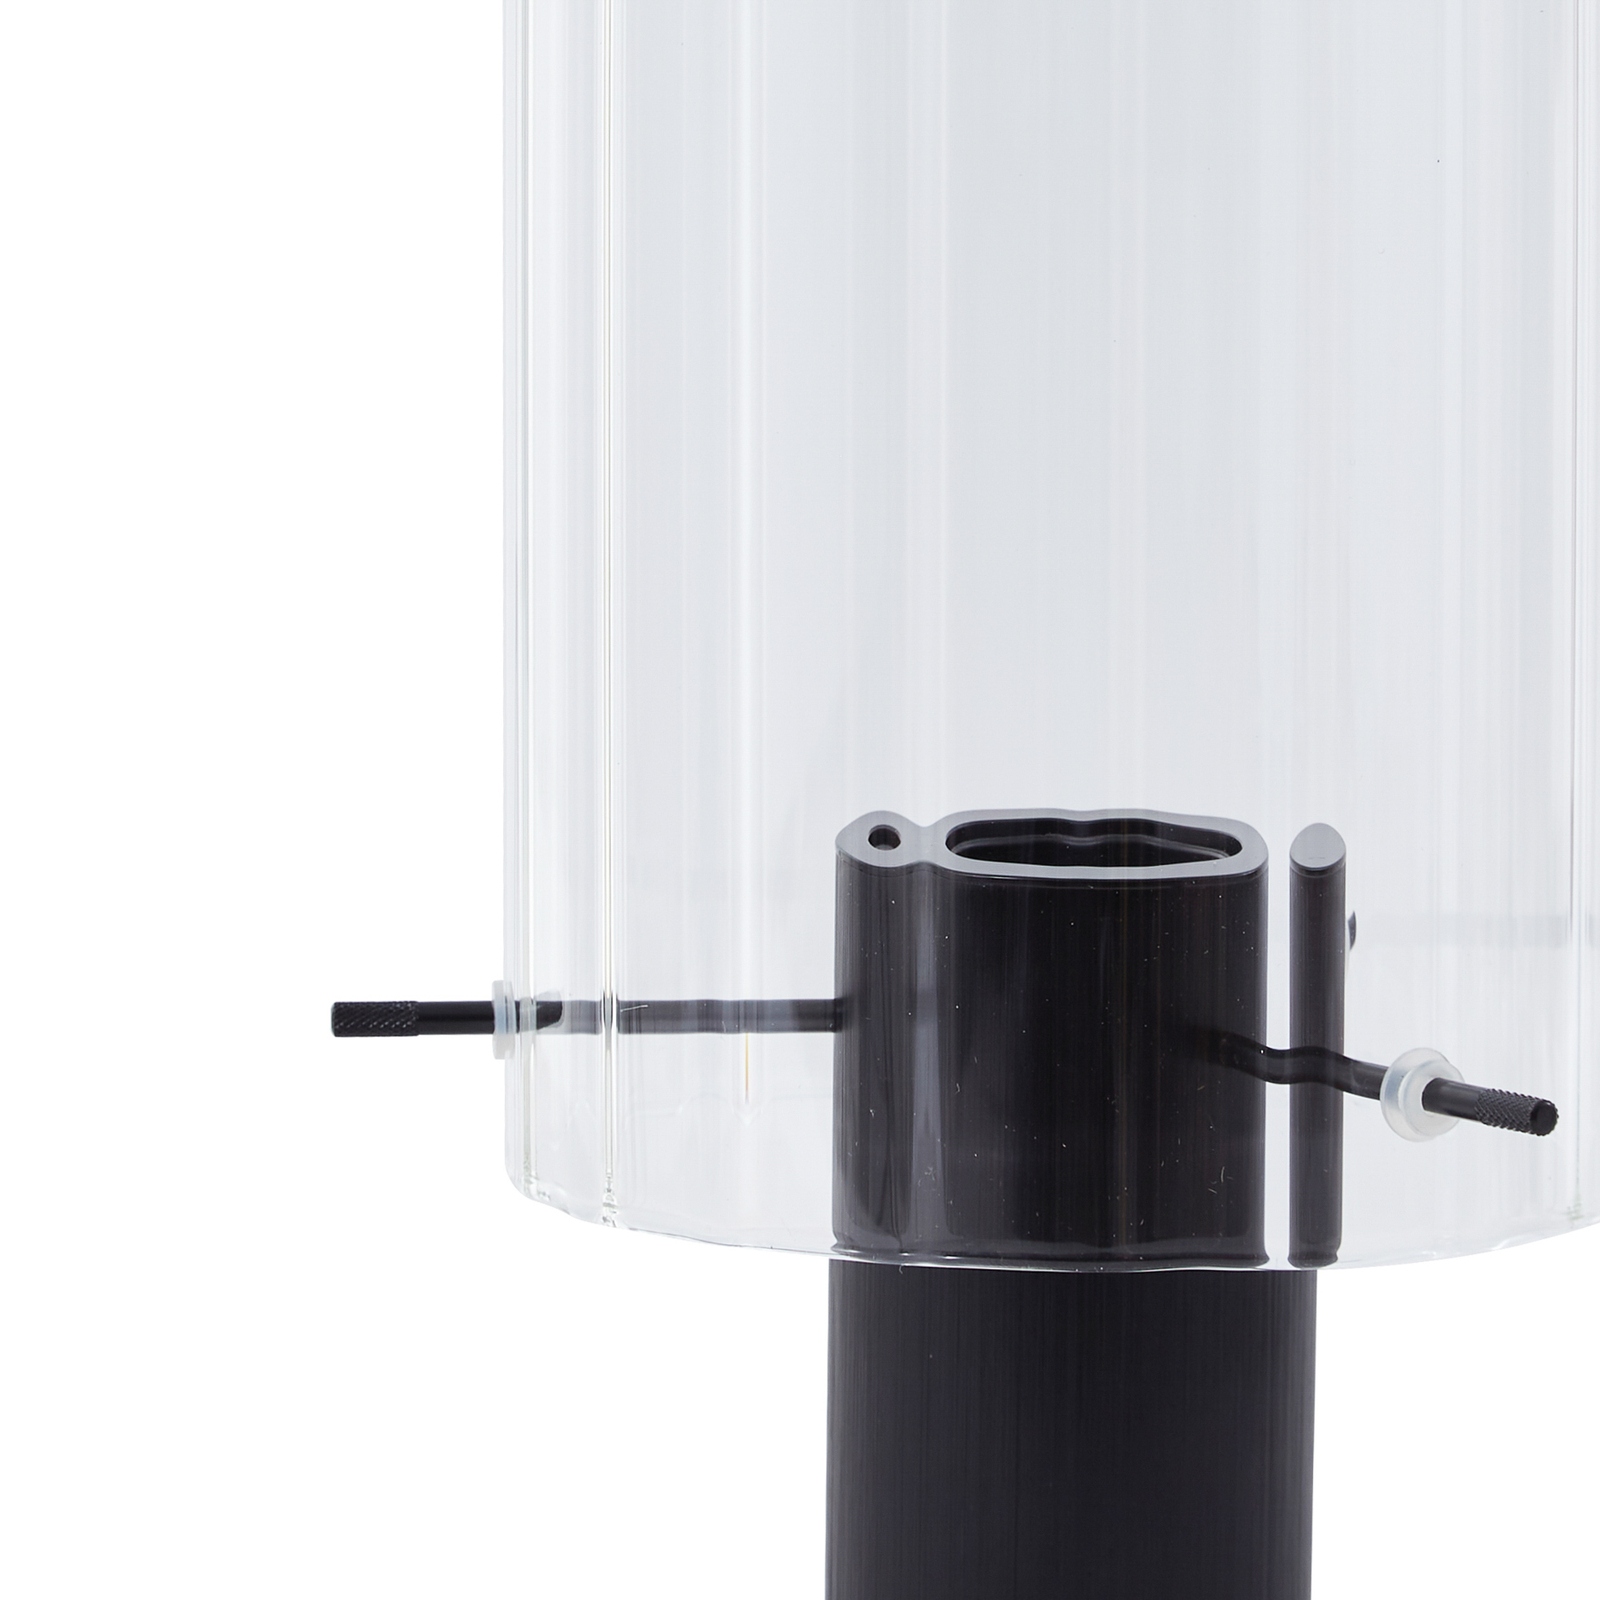 Lucande stolna lampa Eirian, crna, staklo, Ø 14 cm, E27